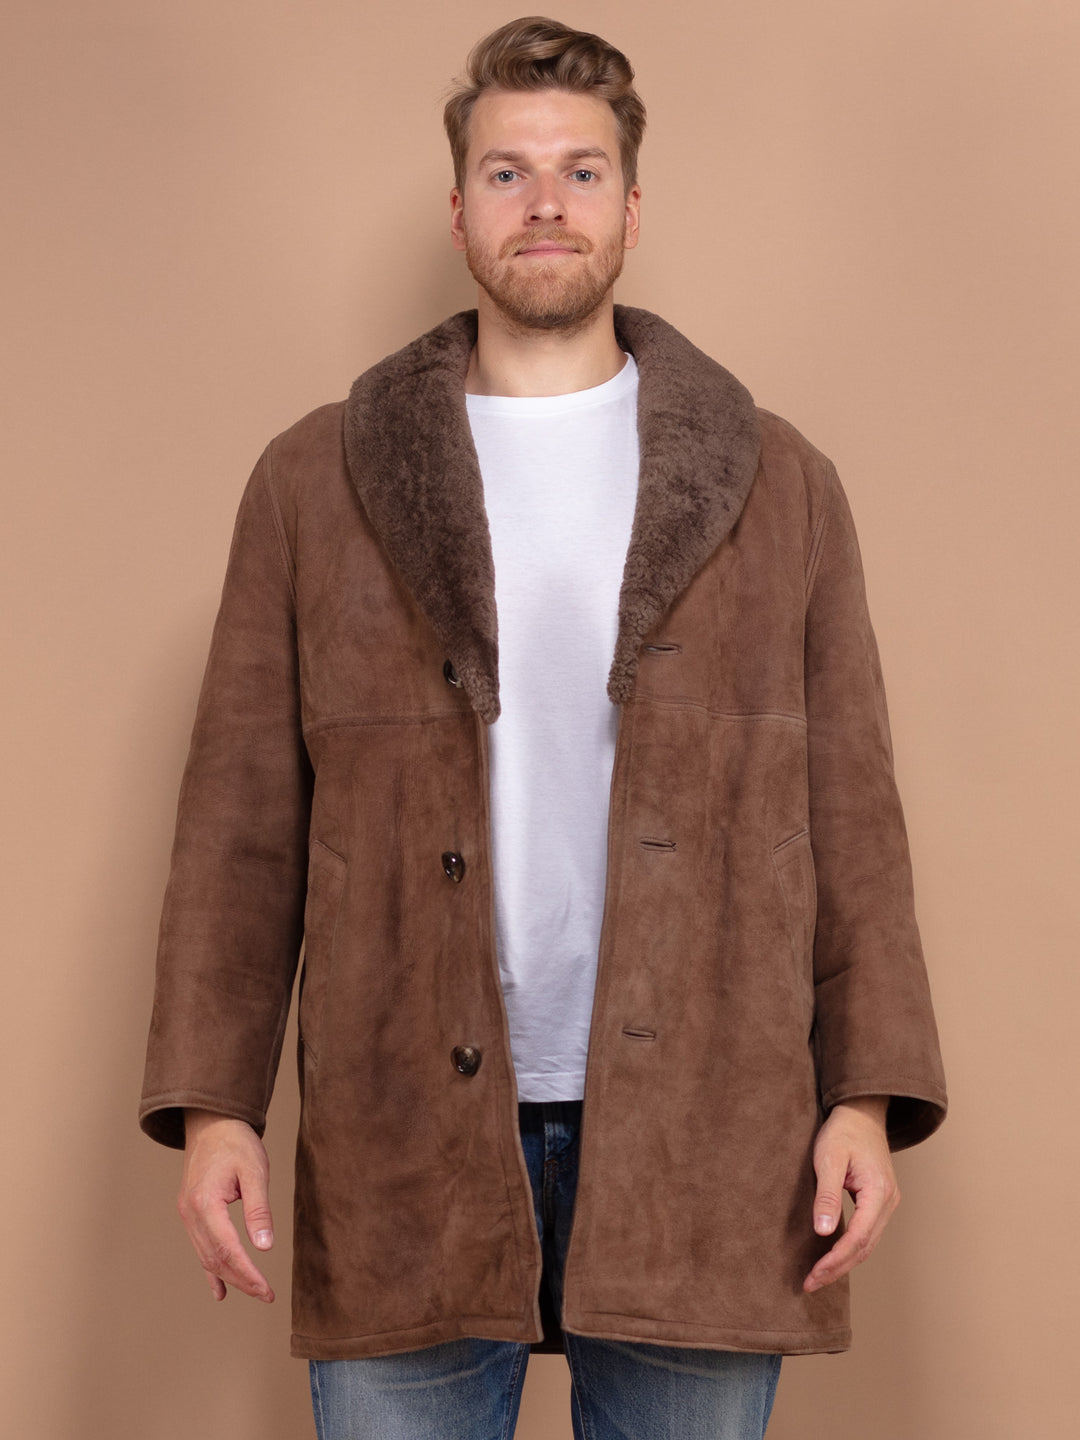 Sheepskin Coat Men, Vintage Suede Coat Large Size, Boho Men Coat, Warm Wool Coat, Old Fashioned Mens Overcoat, Brown Fur Coat, Pre Loved